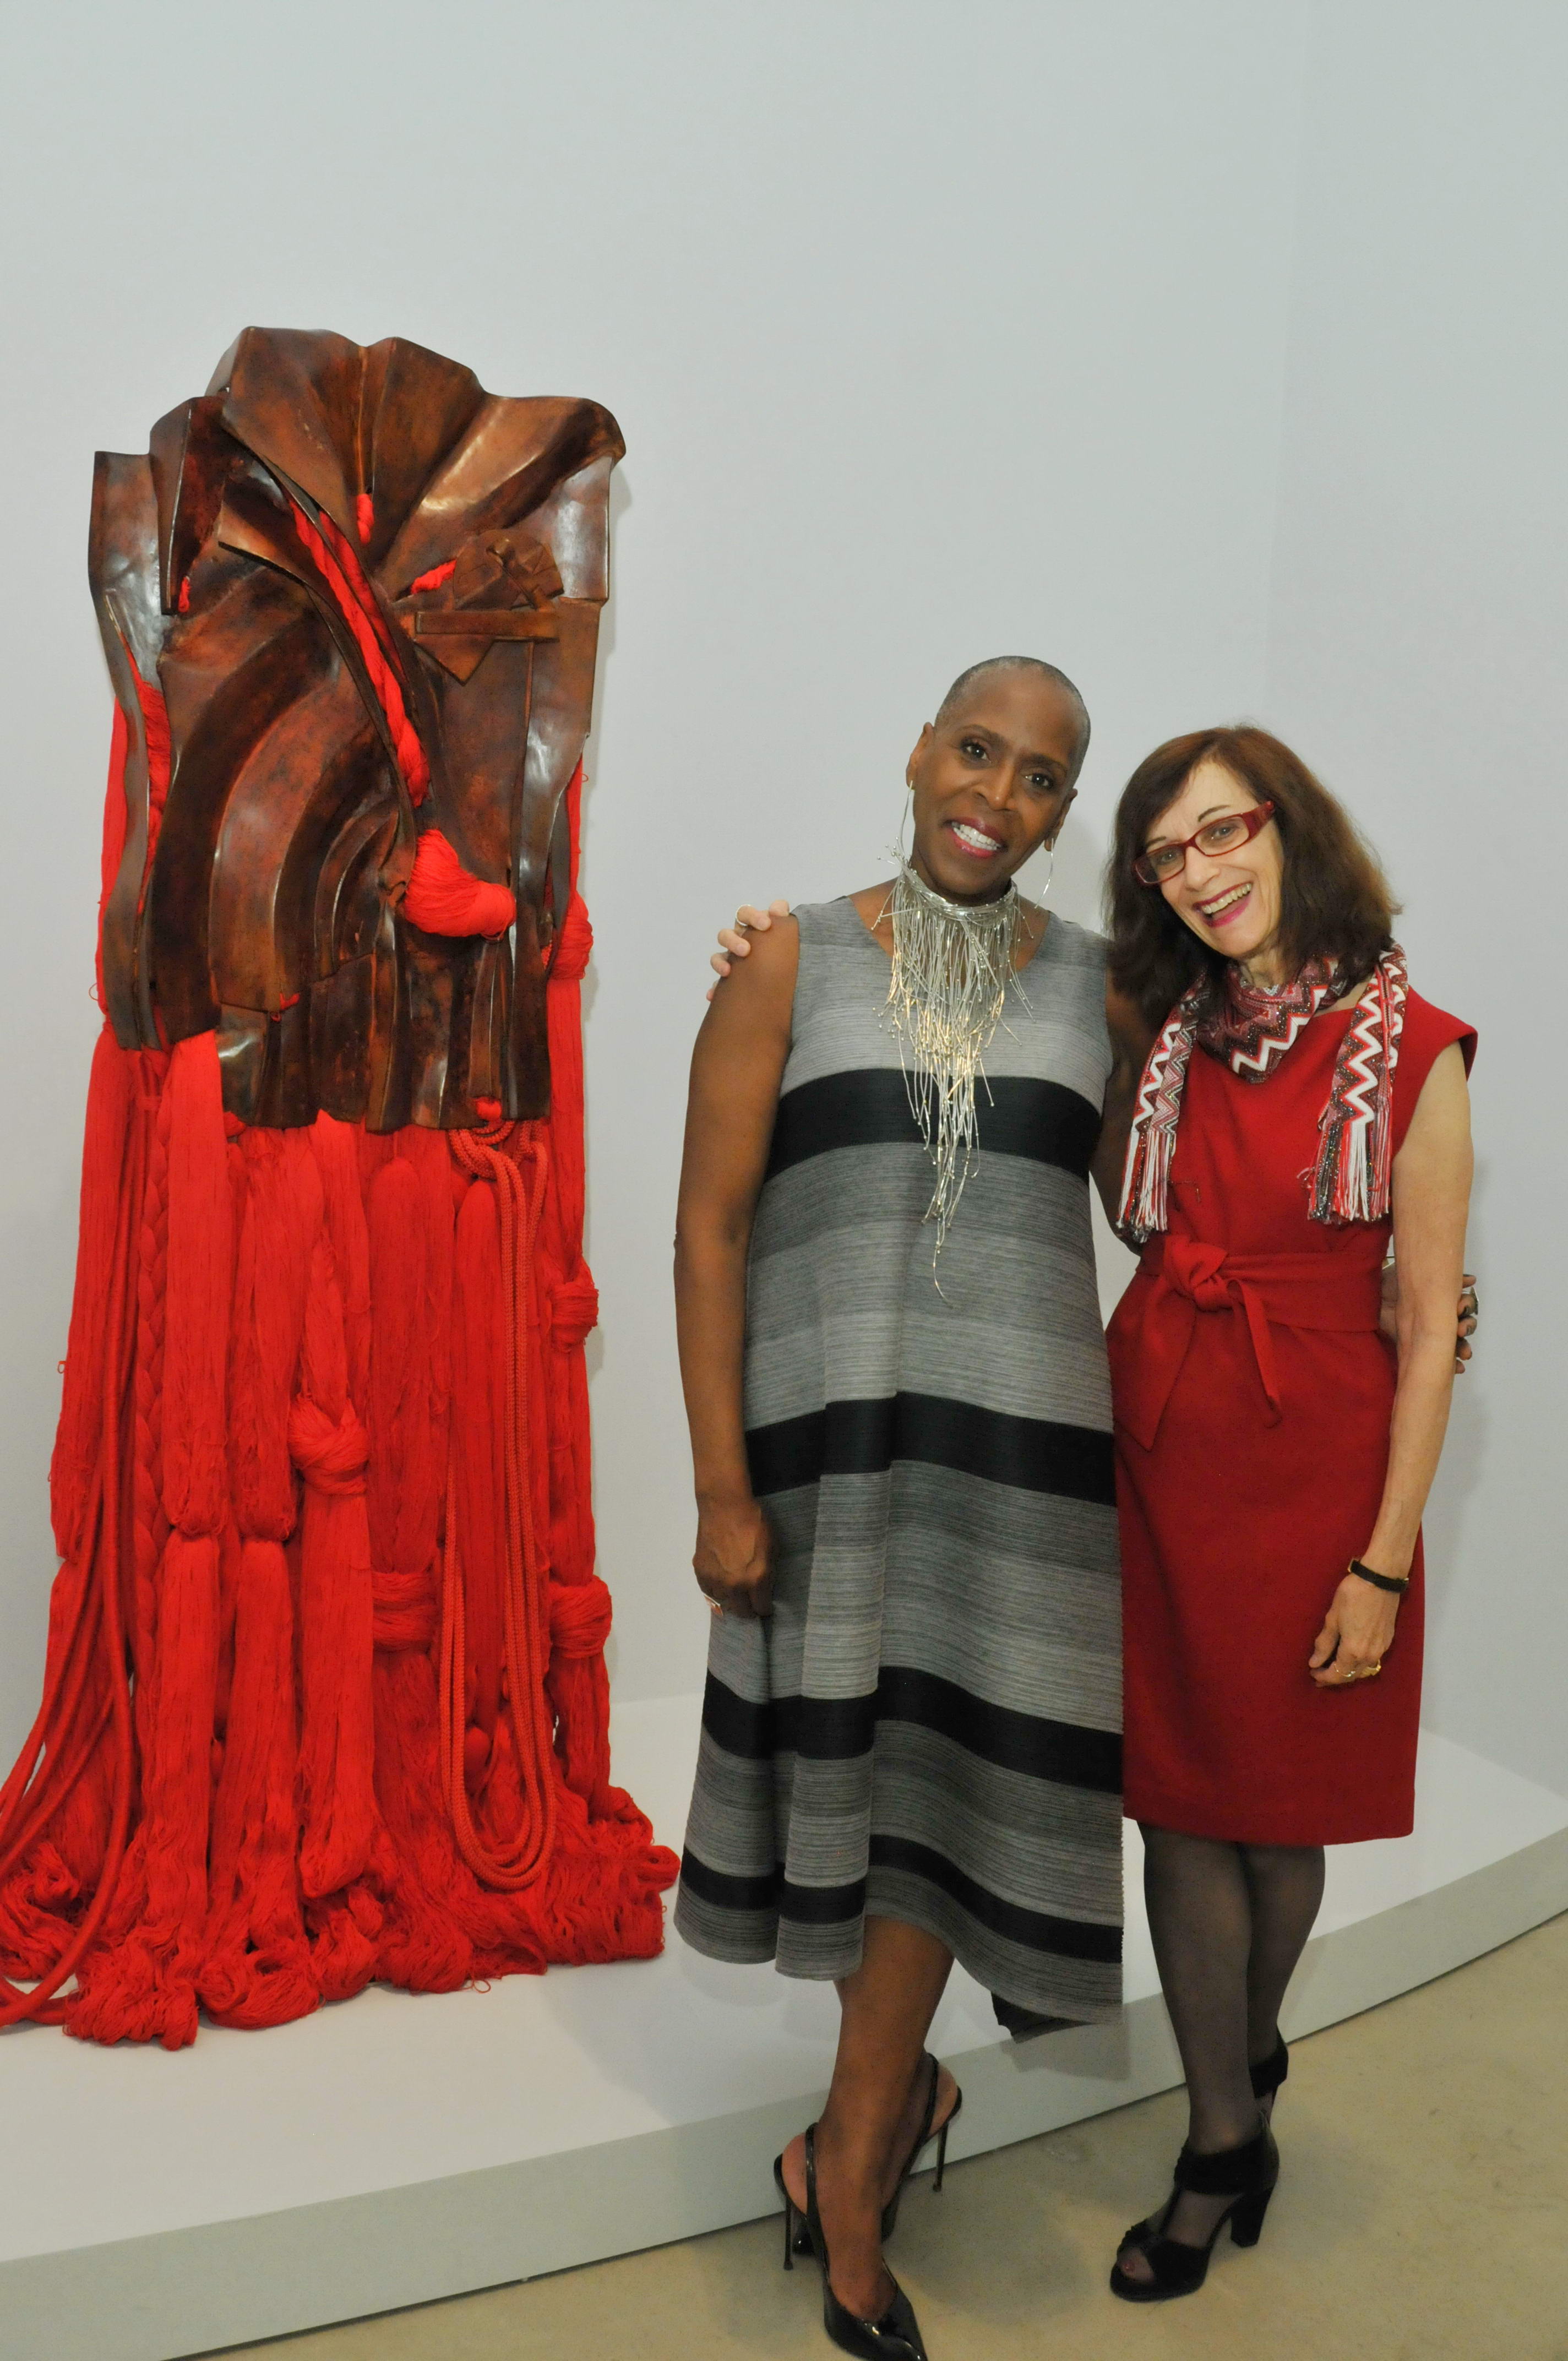 Ellen Handler Spitz with artist's New York City gallery representative, Noel